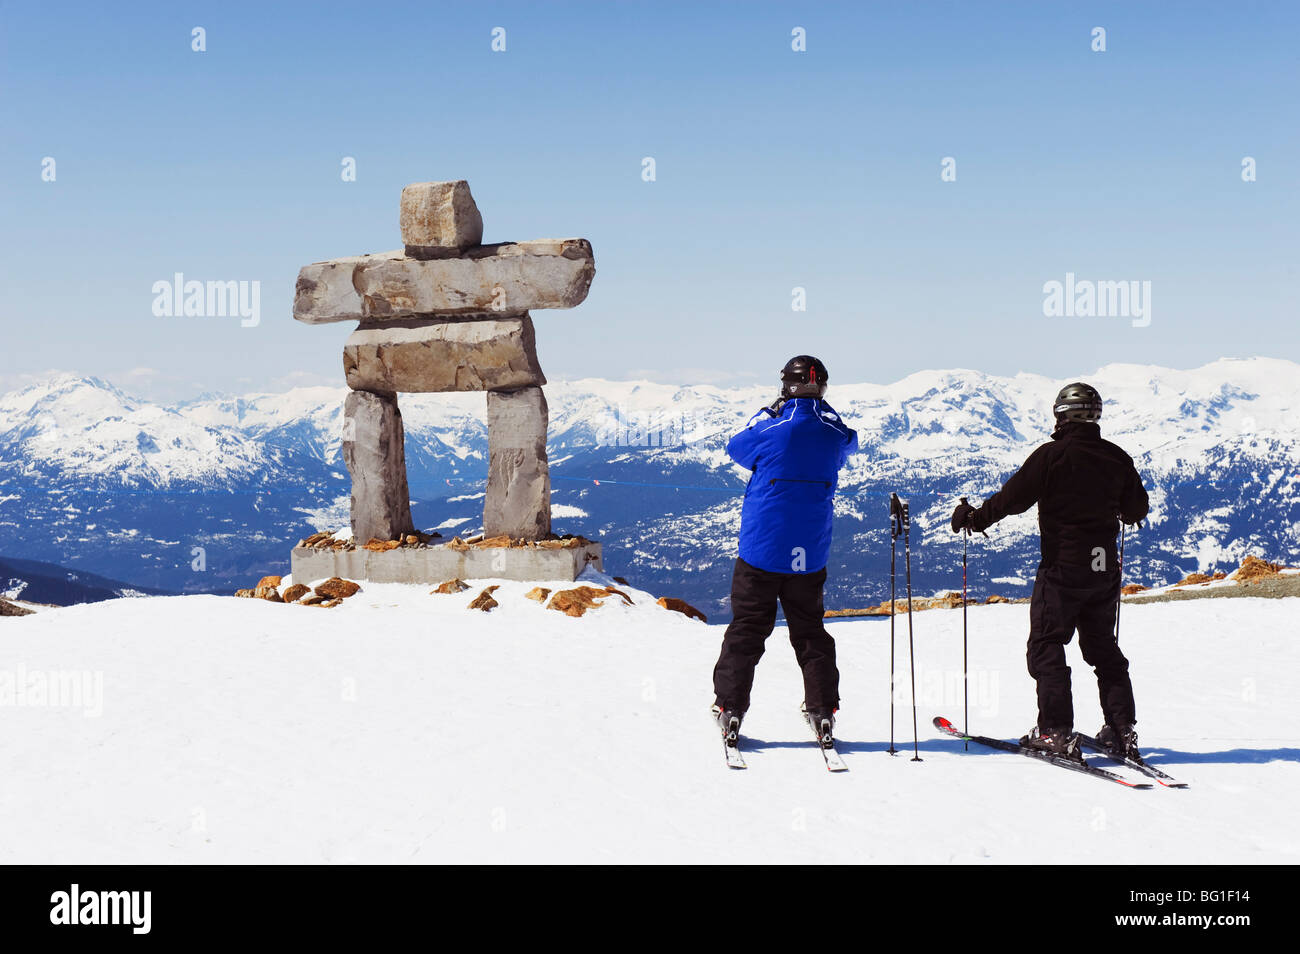 Skifahrer Fotografieren ein Inukshuk-Statue, Whistler Mountain Resort, 2010 Winterspiele Veranstaltungsort, British Columbia, Kanada Stockfoto